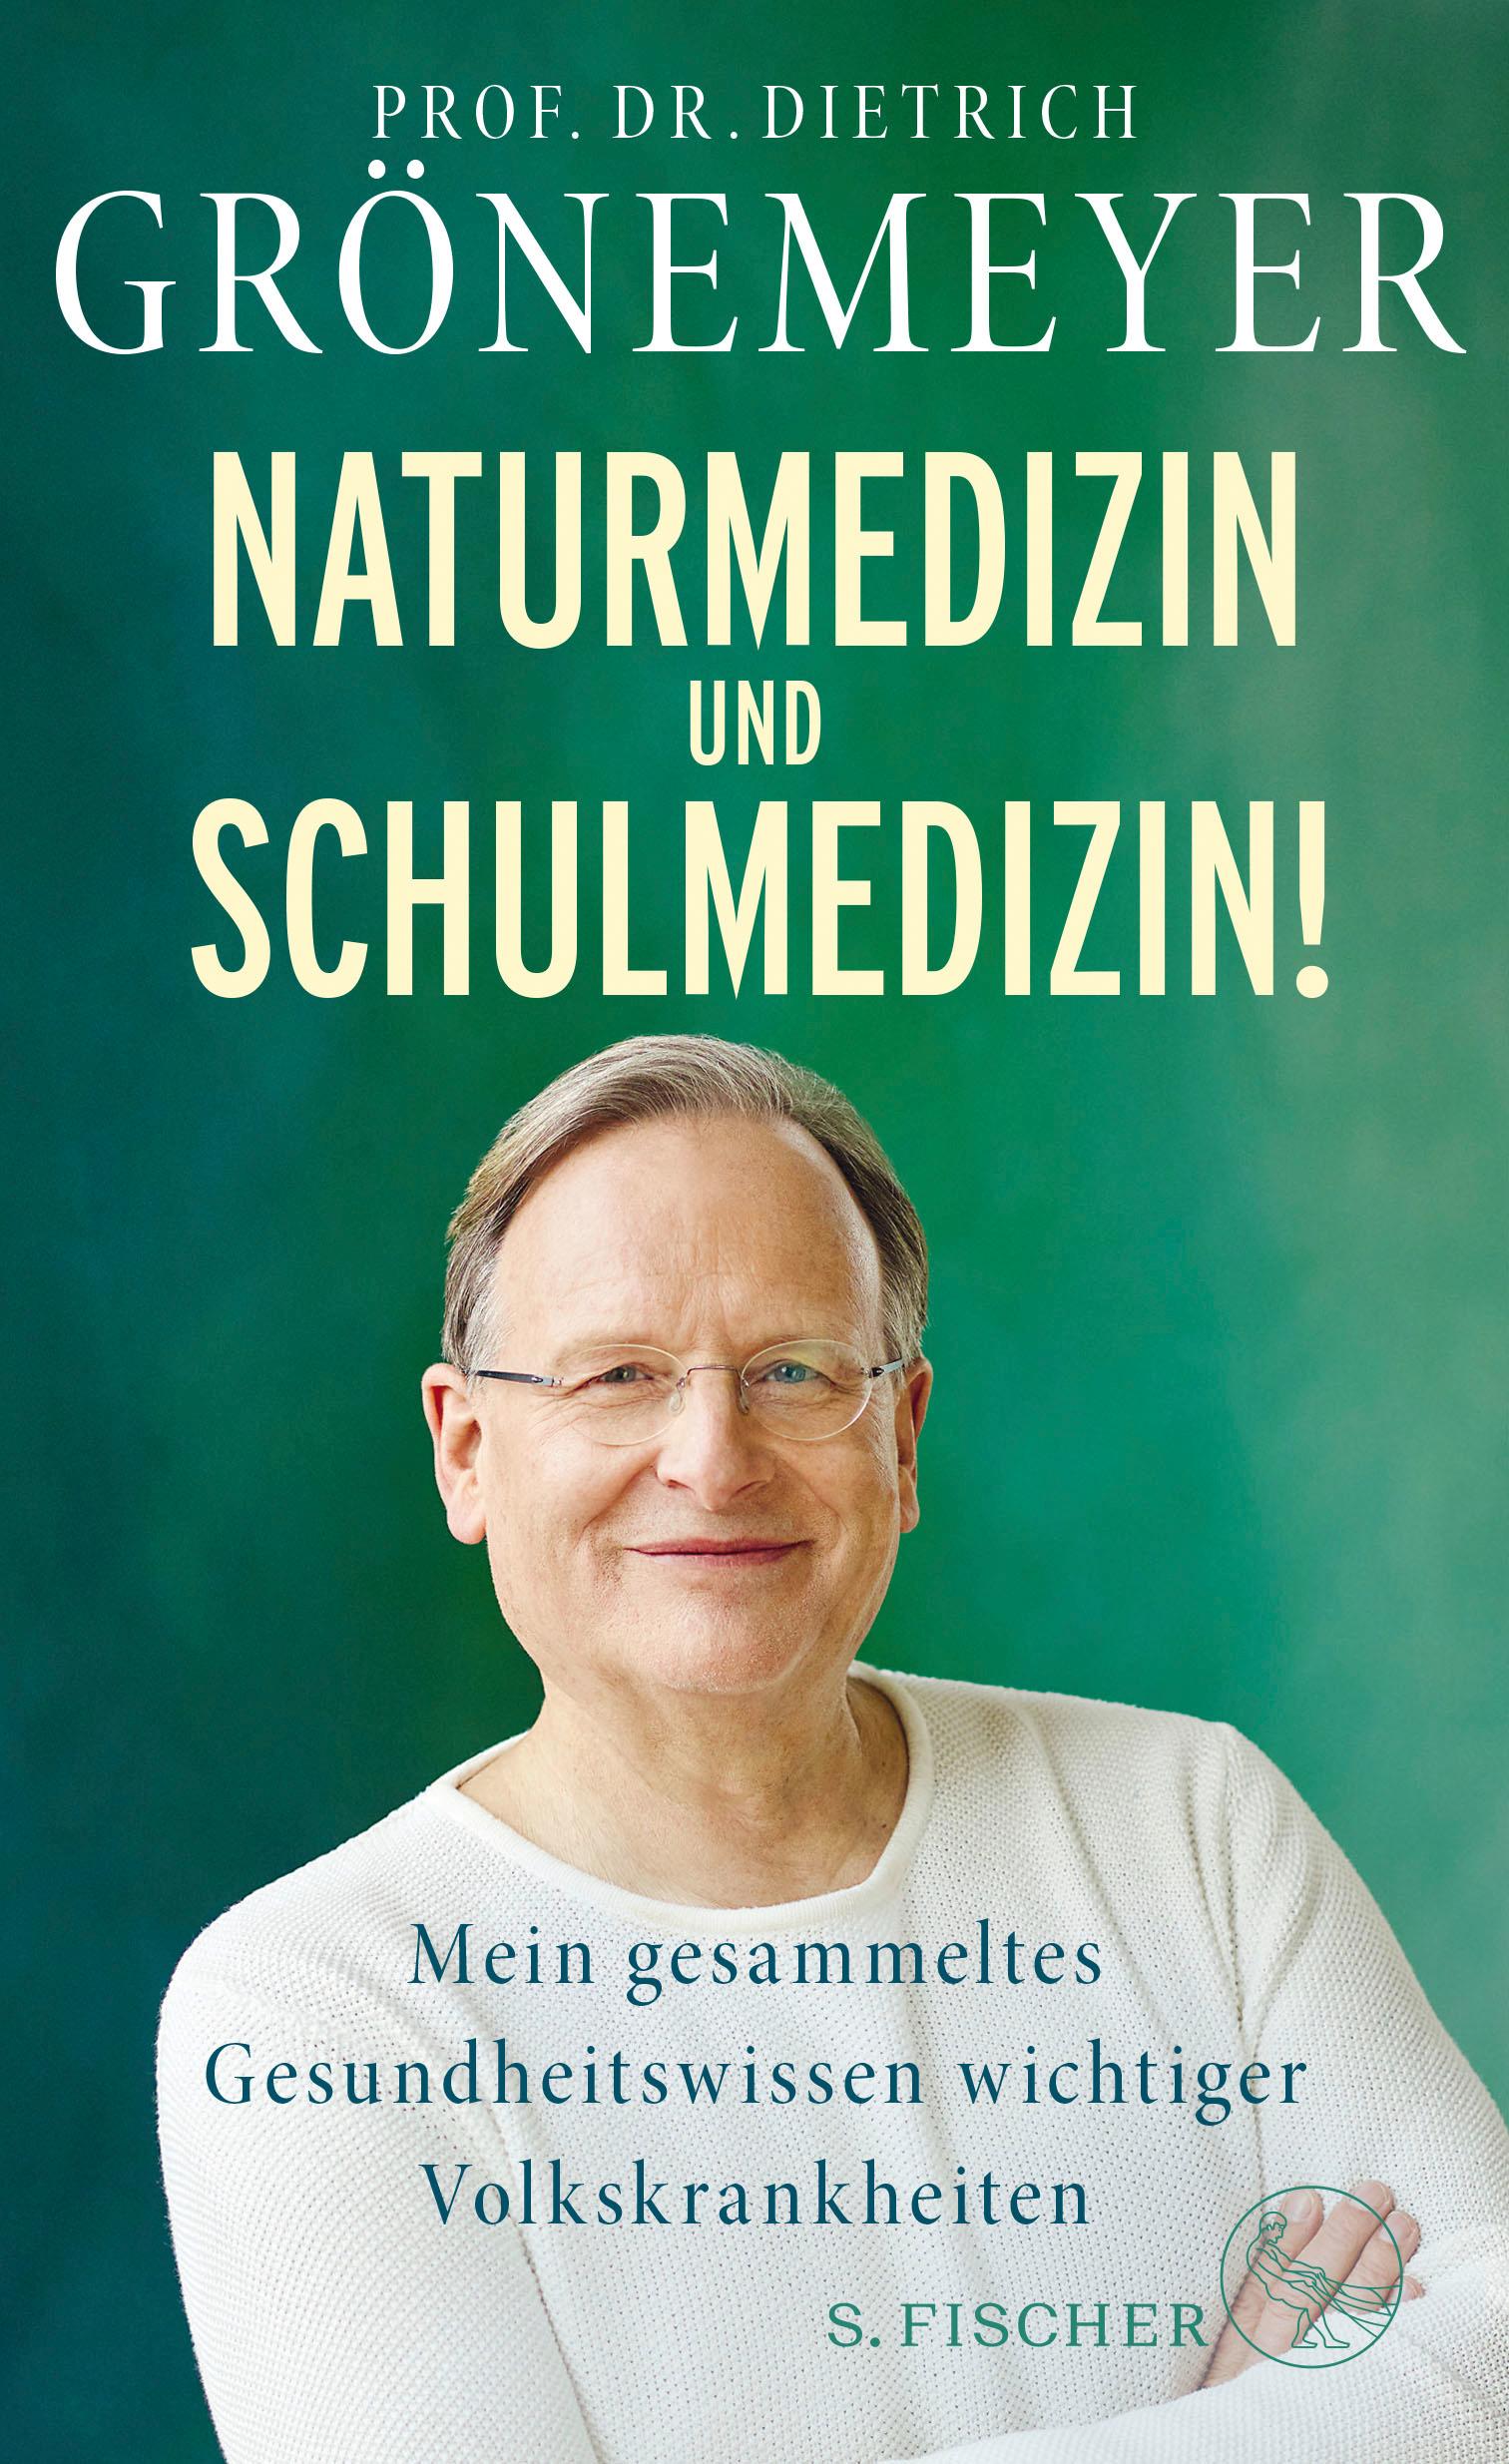 Naturmedizin und Schulmedizin!